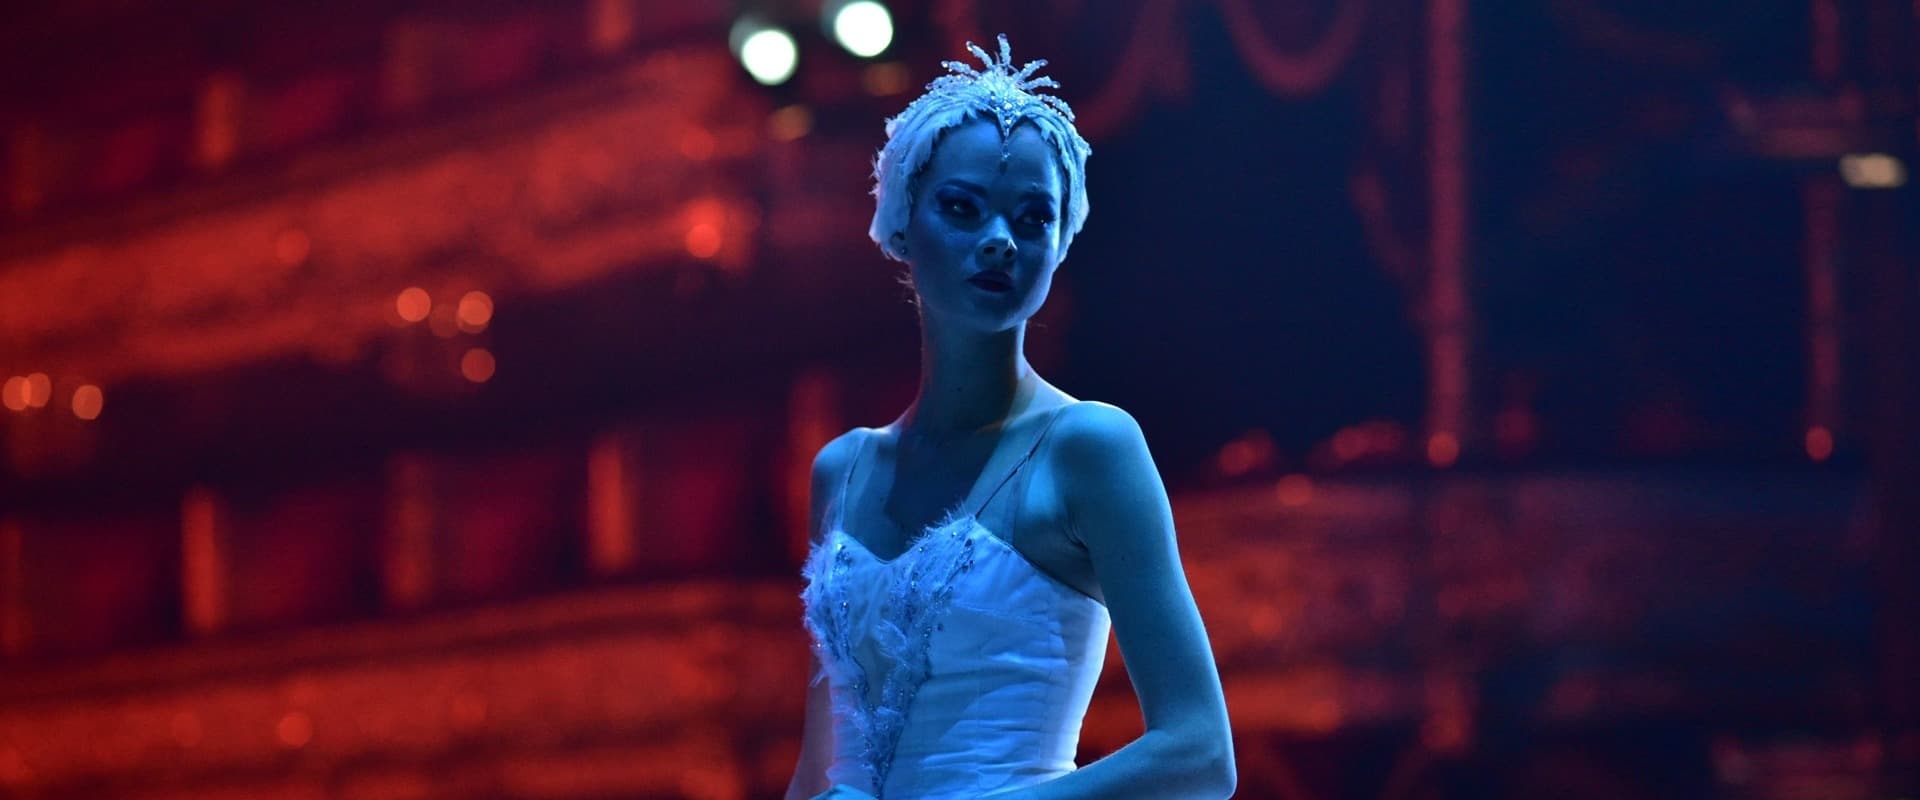 Ballerina - Ihr Traum vom Bolschoi